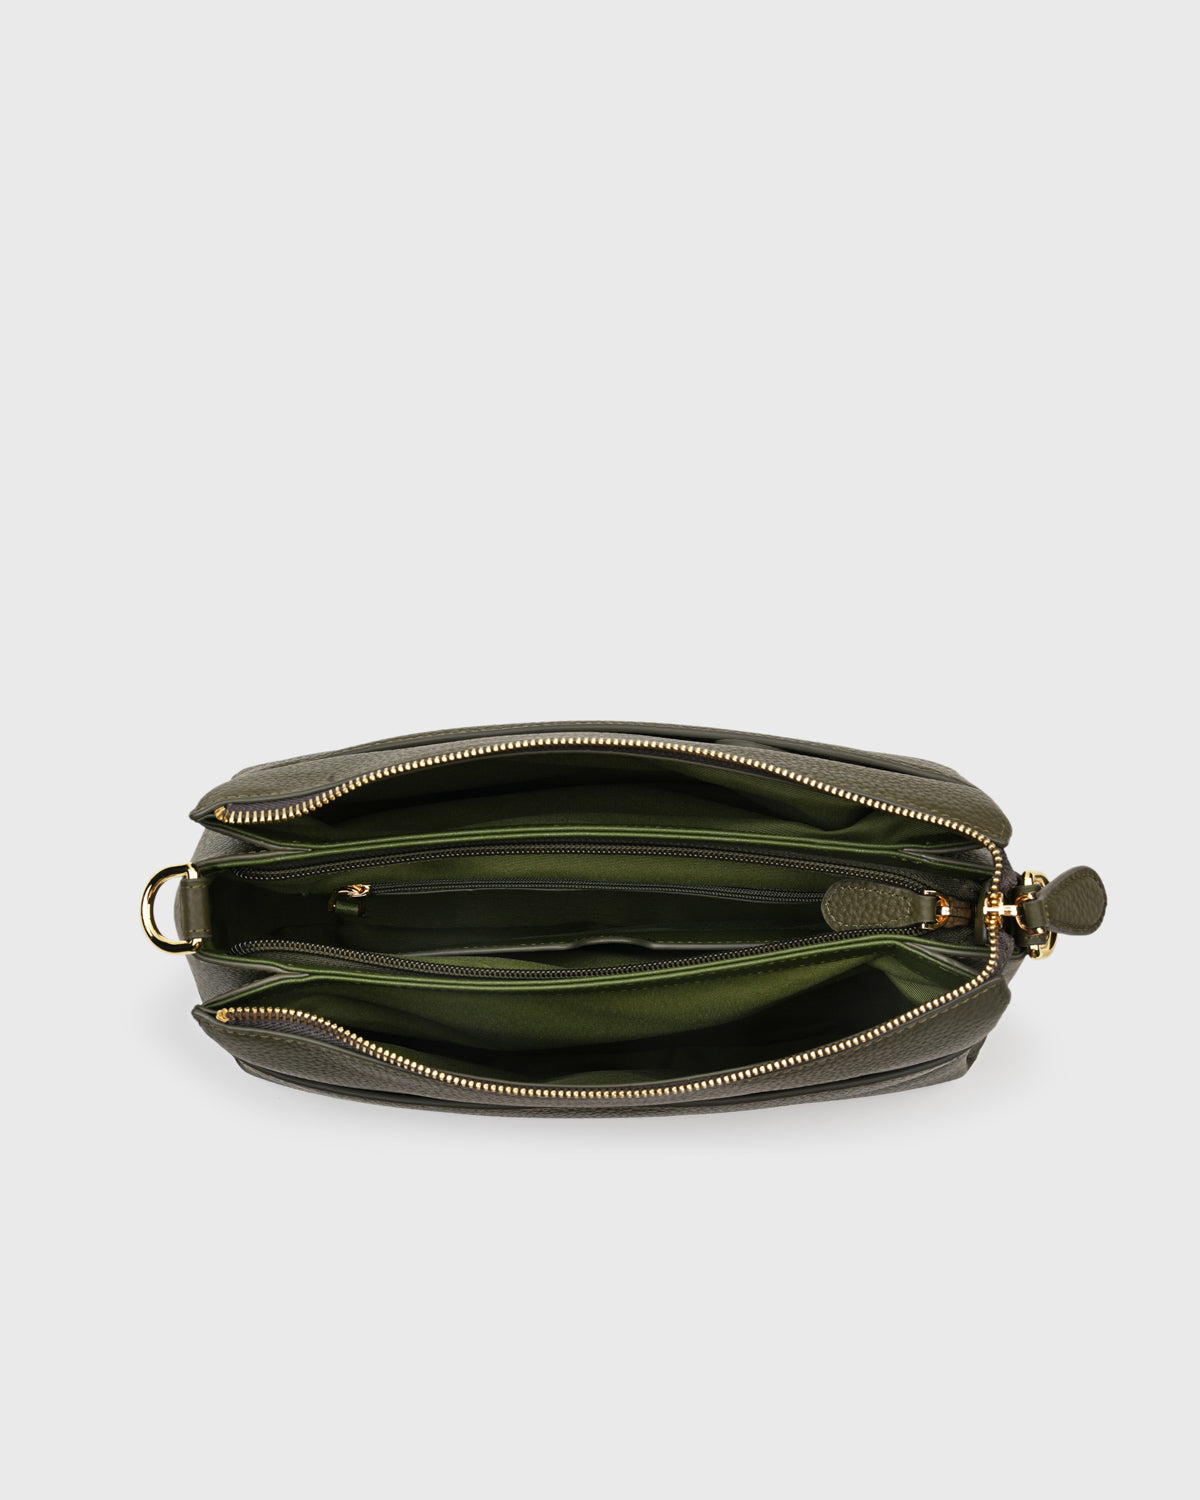 Marlows Shoulder Bag (Olive)